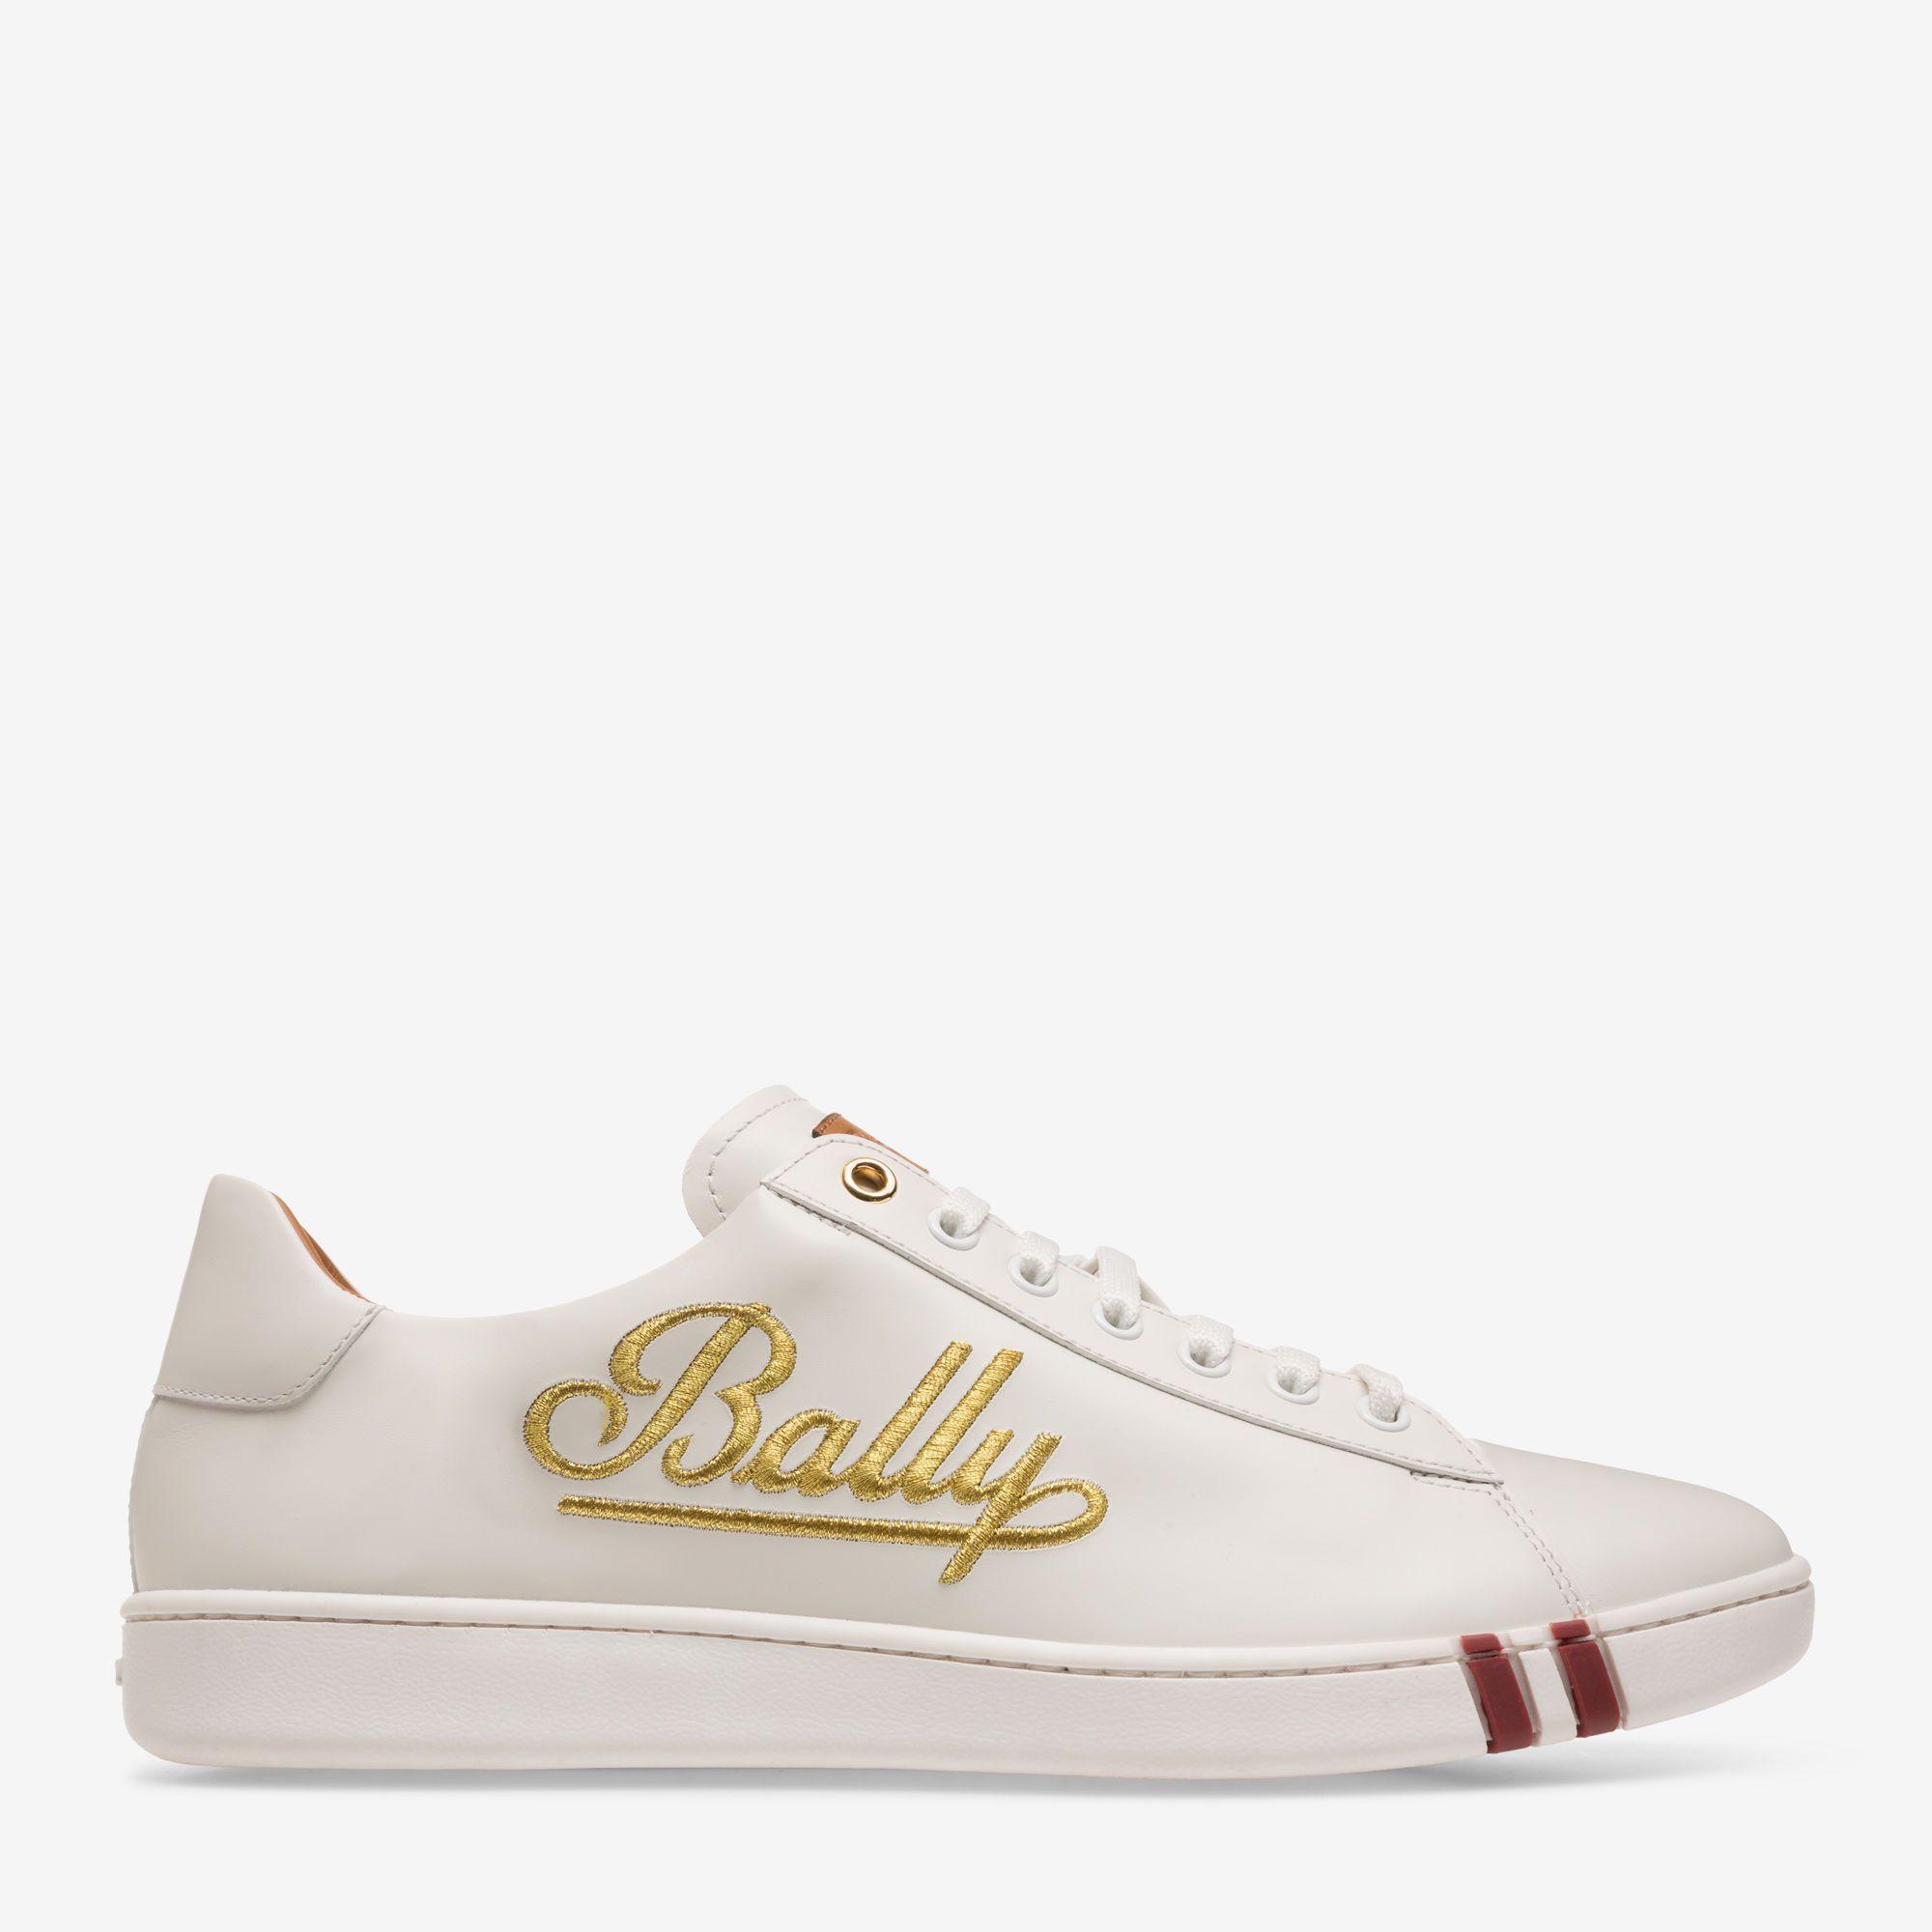 Bally Shoes Logo - WINSTON| Men's sneakers | Bally